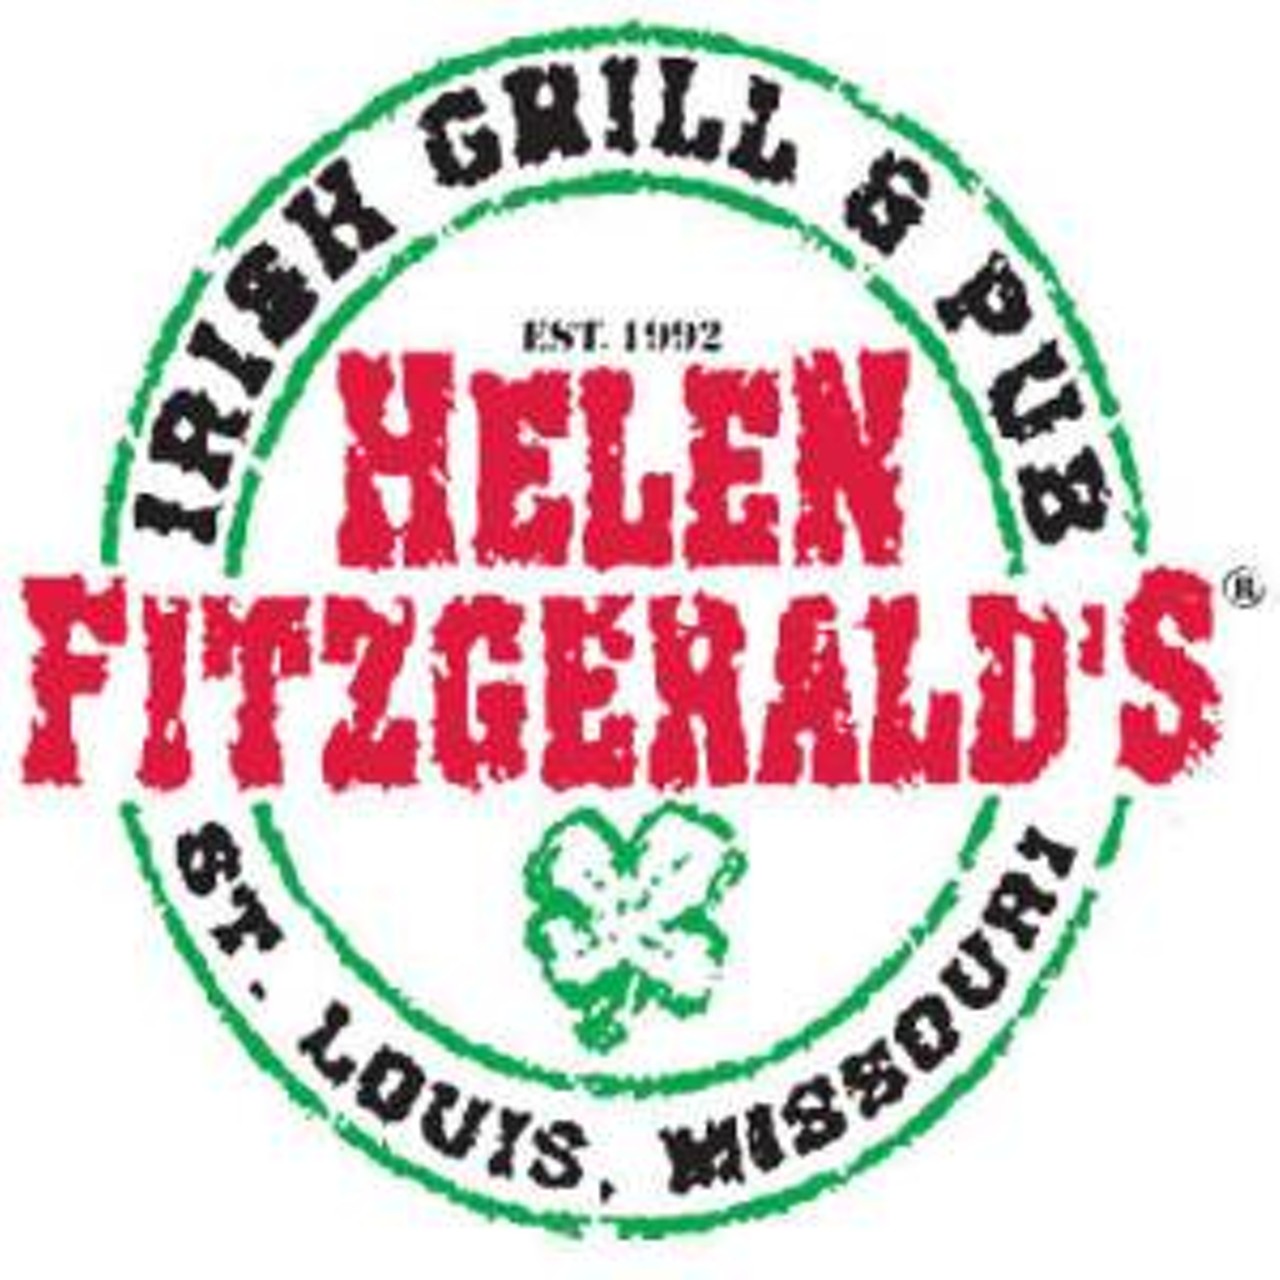 Helen Fitzgerald's